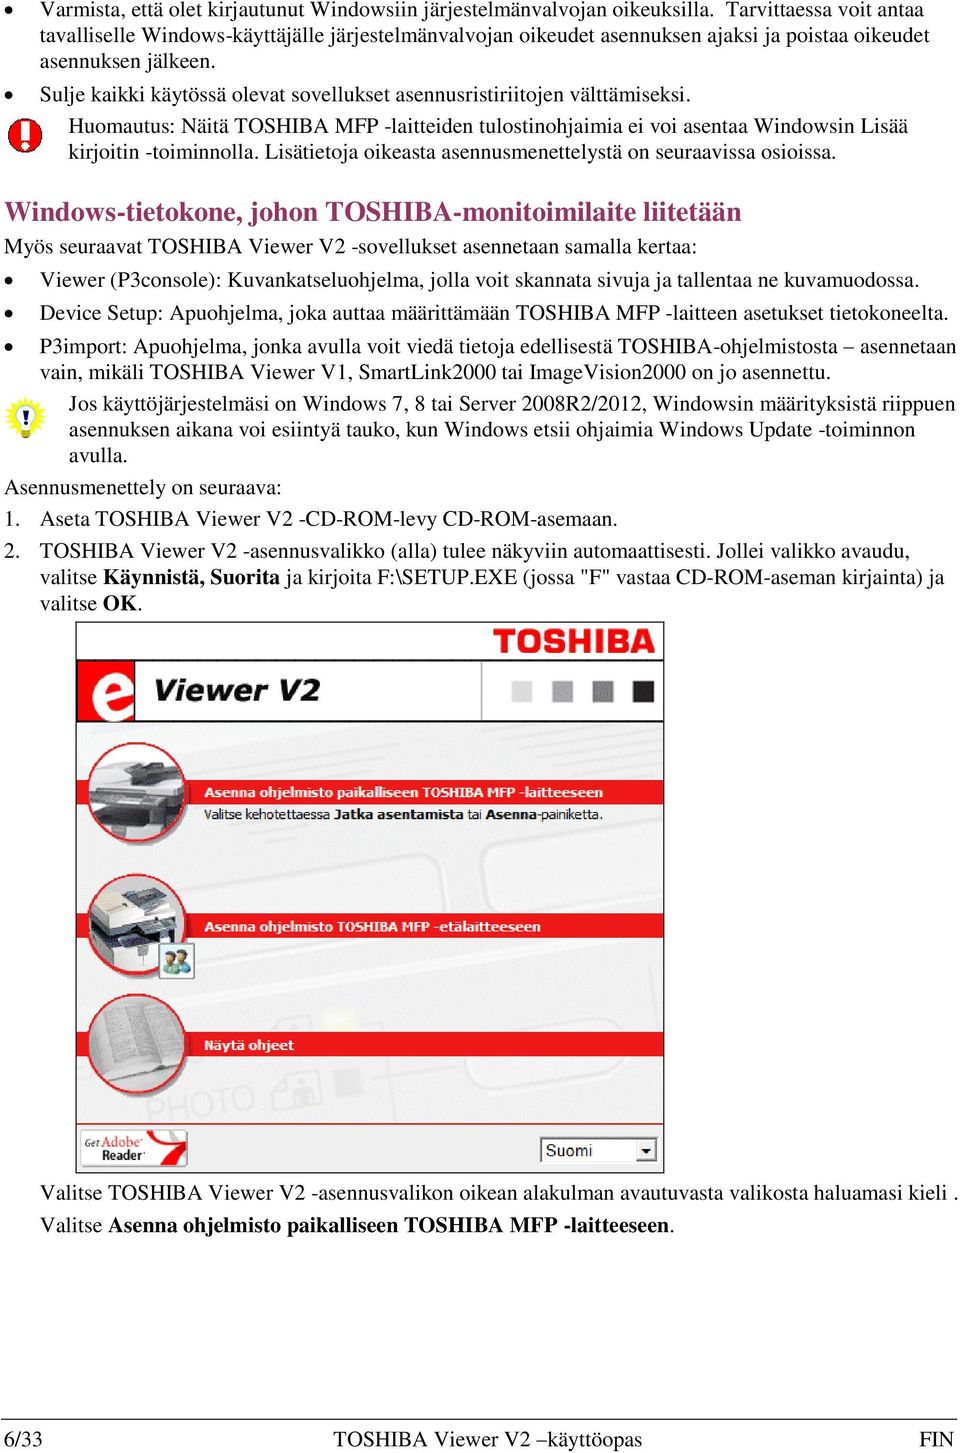 Sulje kaikki käytössä olevat sovellukset asennusristiriitojen välttämiseksi. Huomautus: Näitä TOSHIBA MFP -laitteiden tulostinohjaimia ei voi asentaa Windowsin Lisää kirjoitin -toiminnolla.